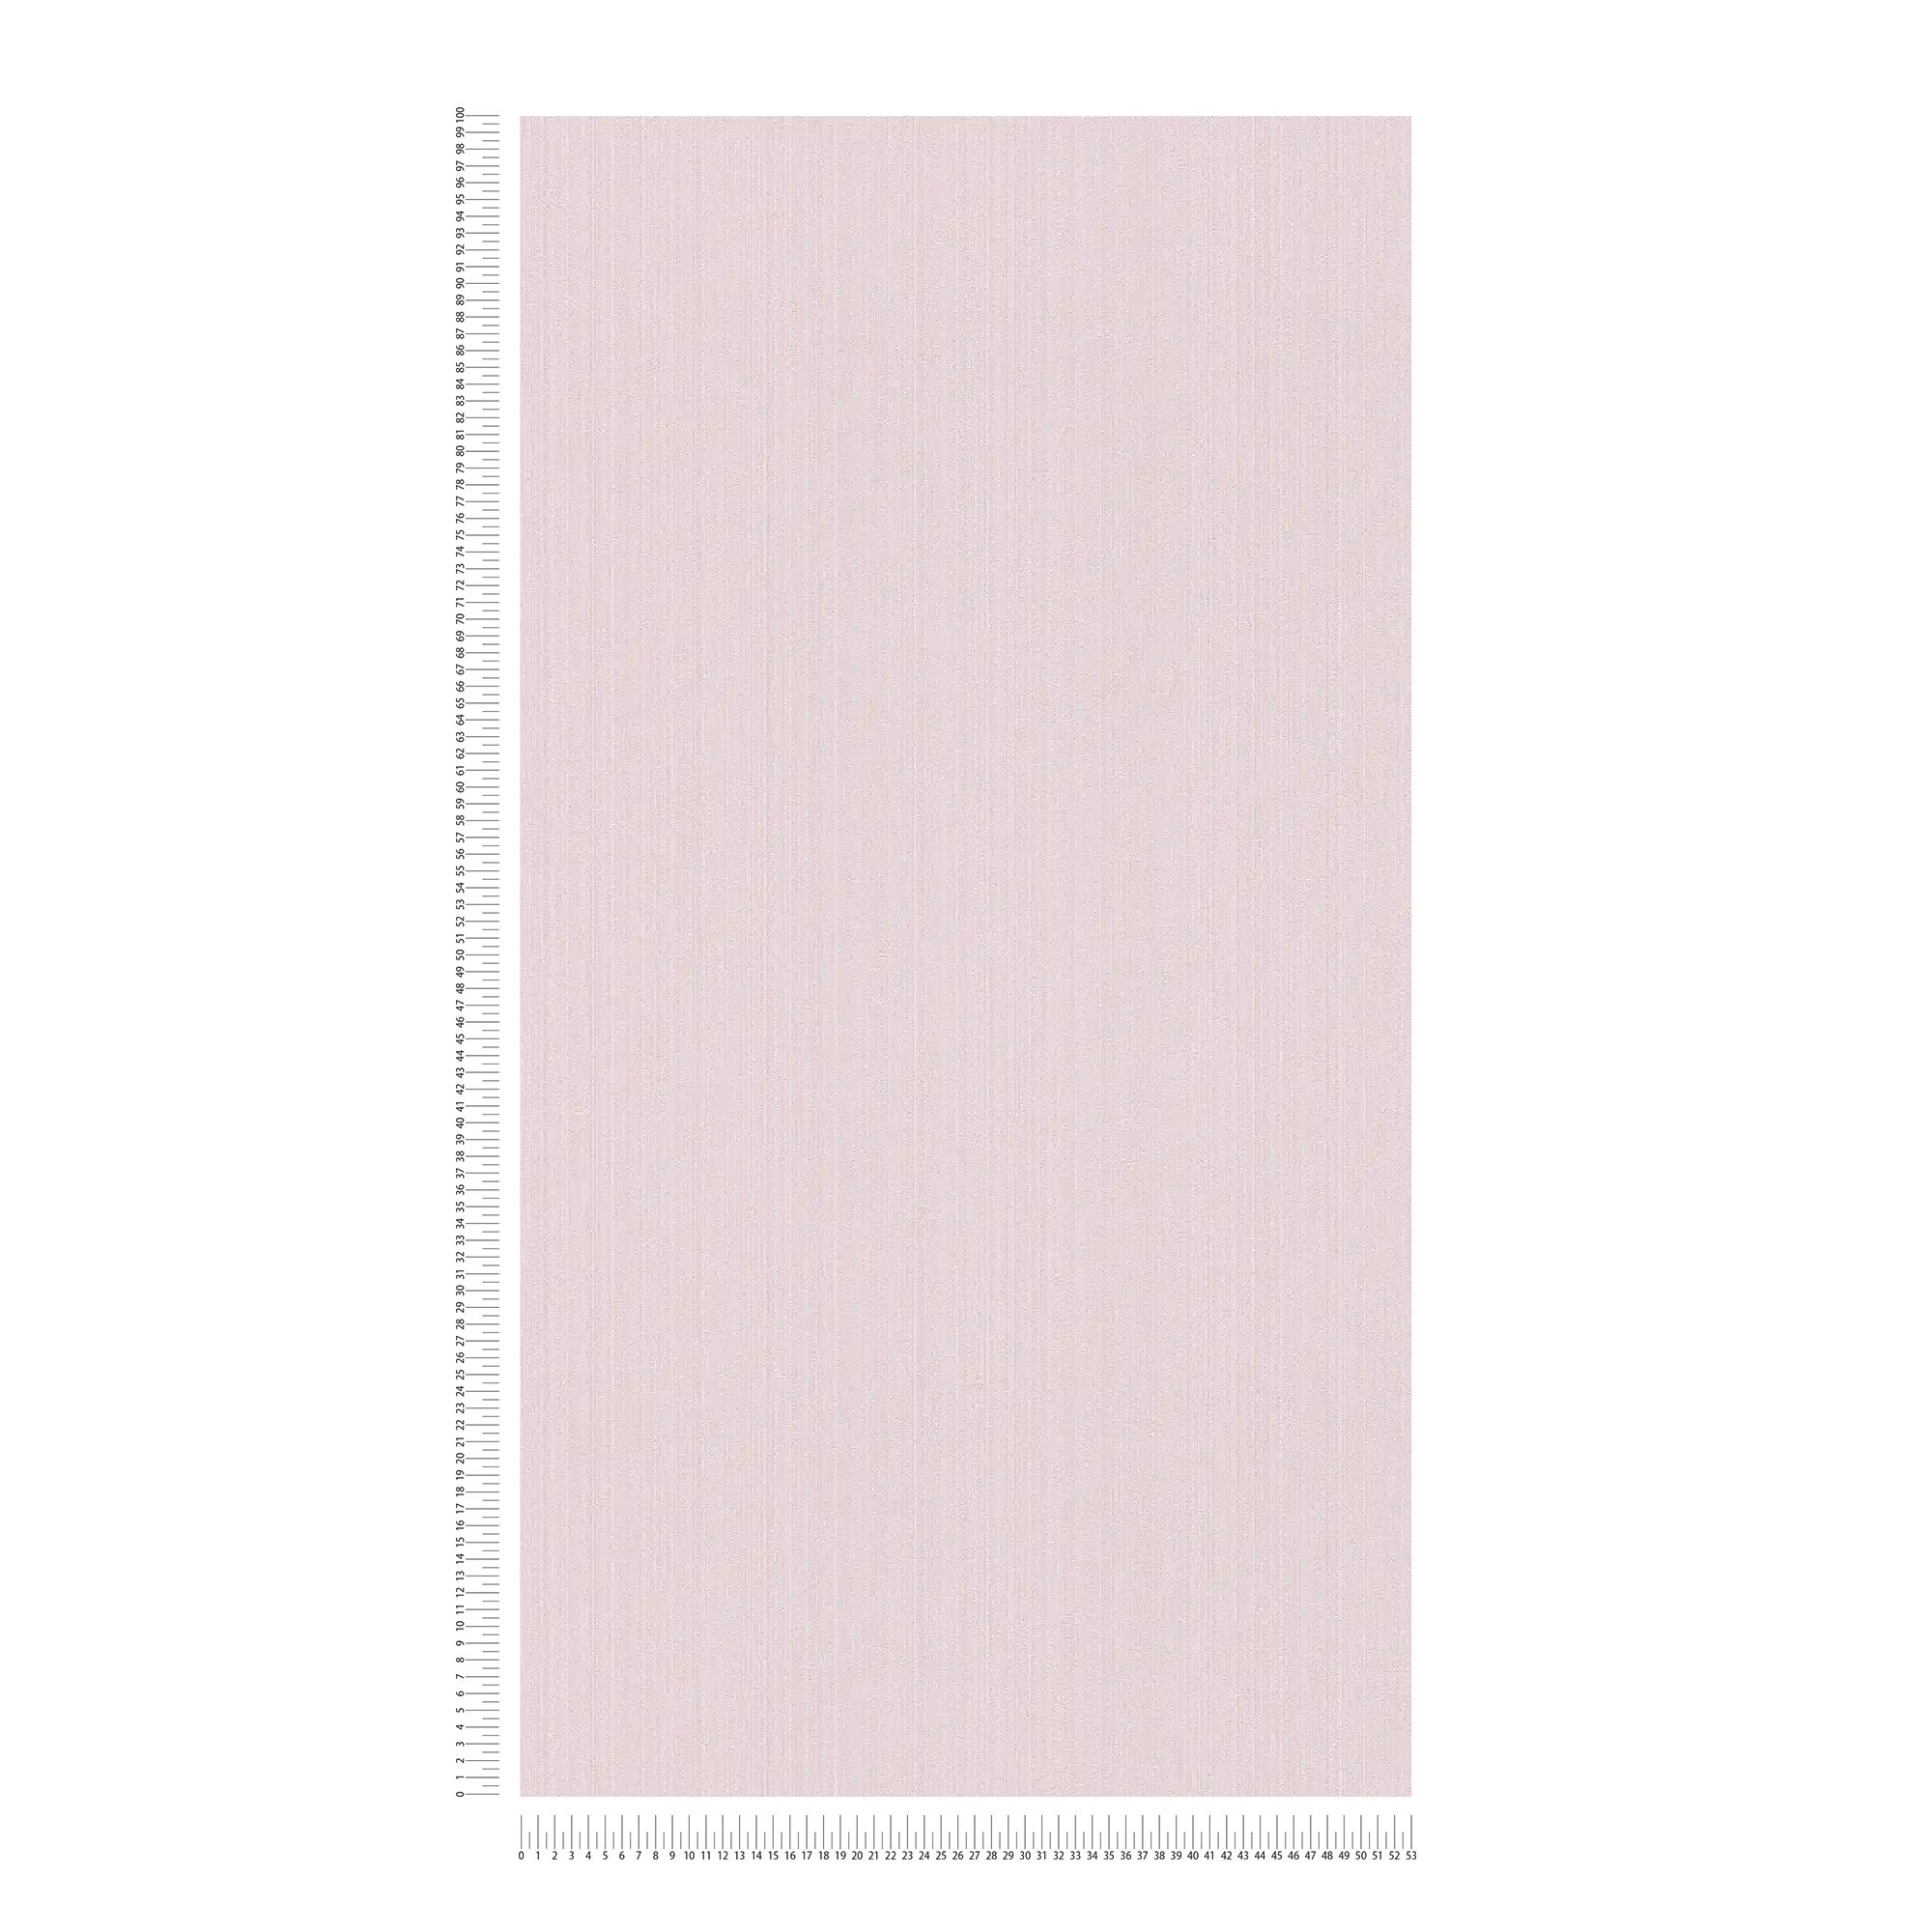             Roze vliesbehang zijde mat, effen met structuur effect
        